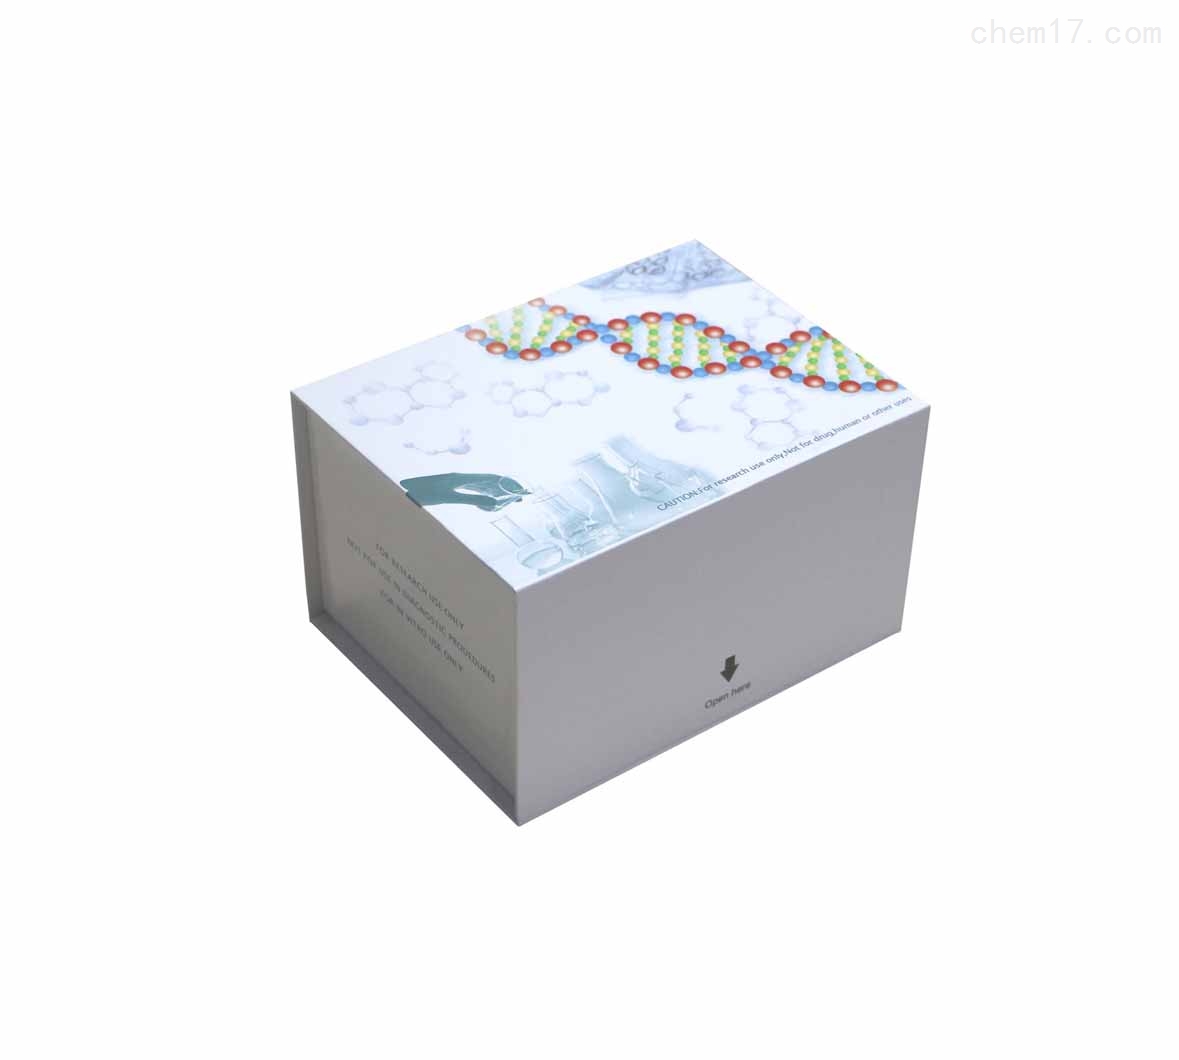 人尿素(Urea)ELISA试剂盒免费待测 